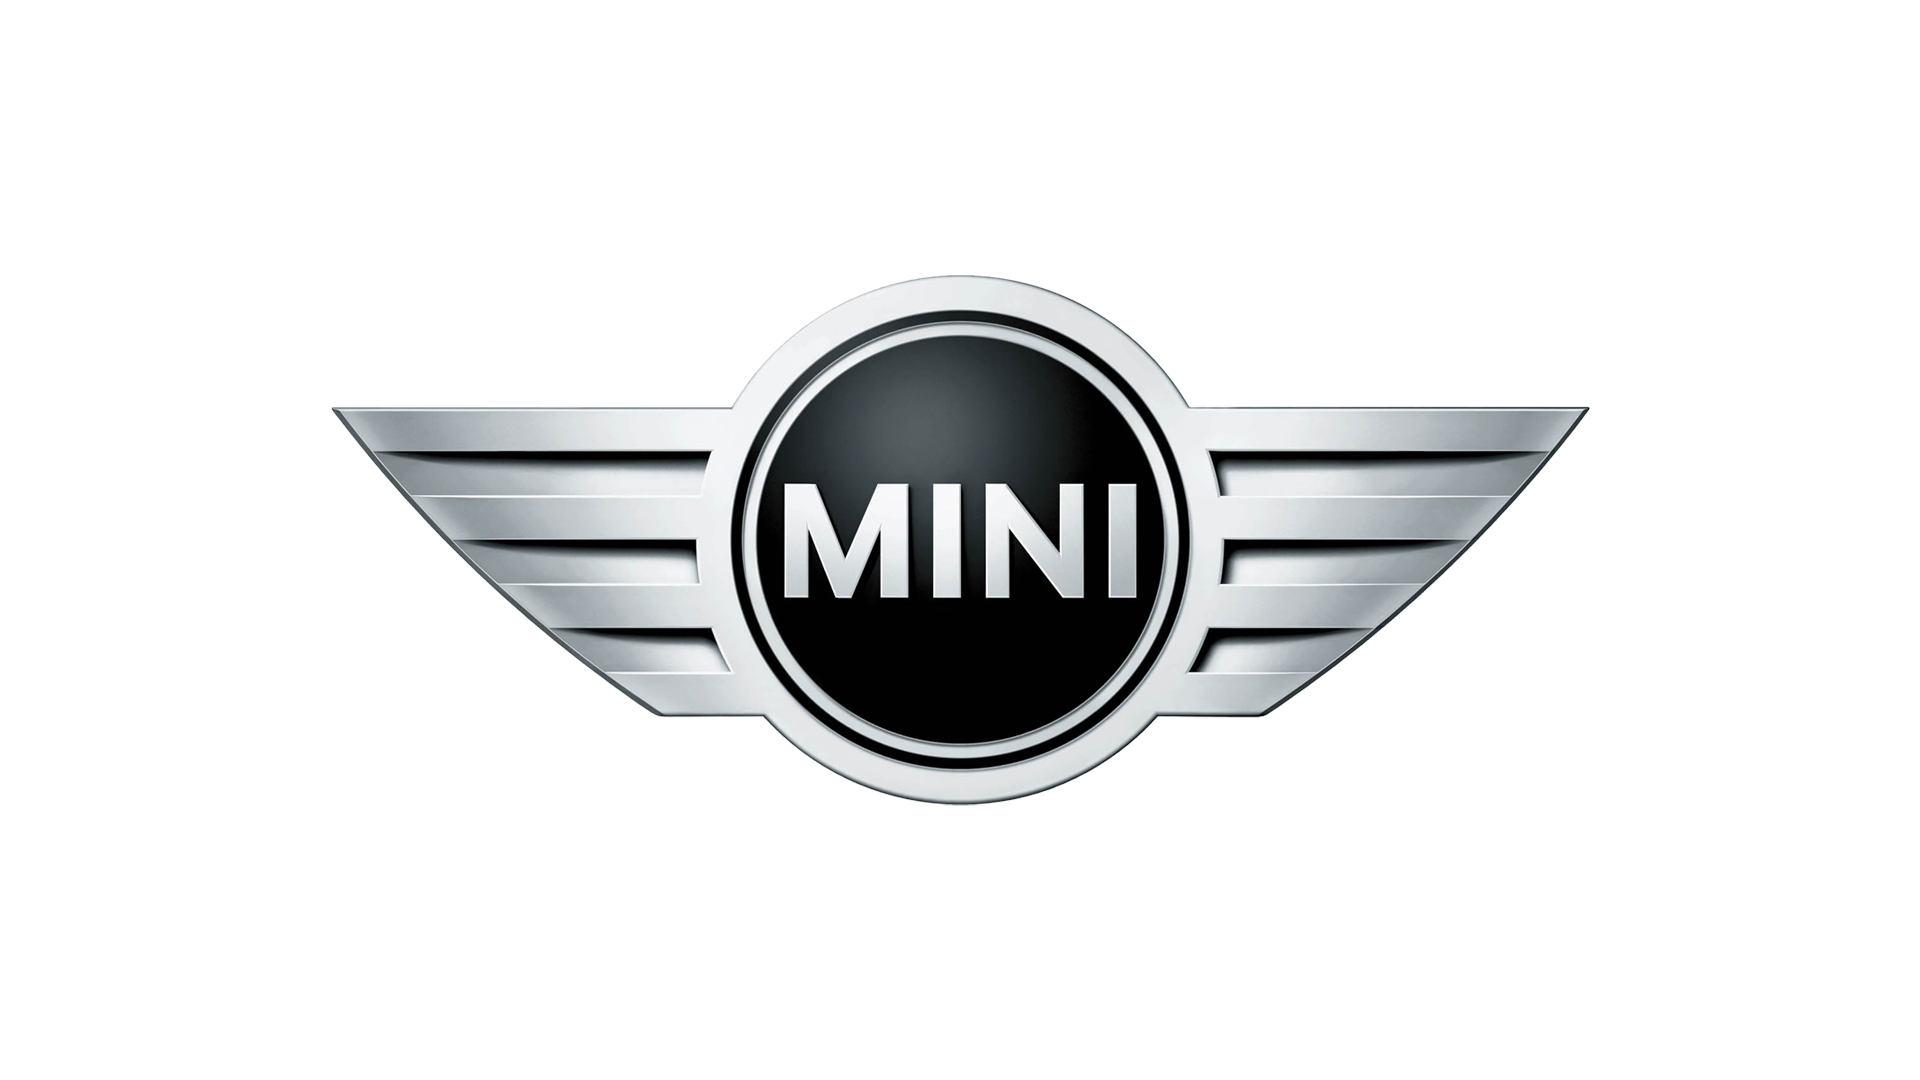 Mini logo 2001 1920x1080 2